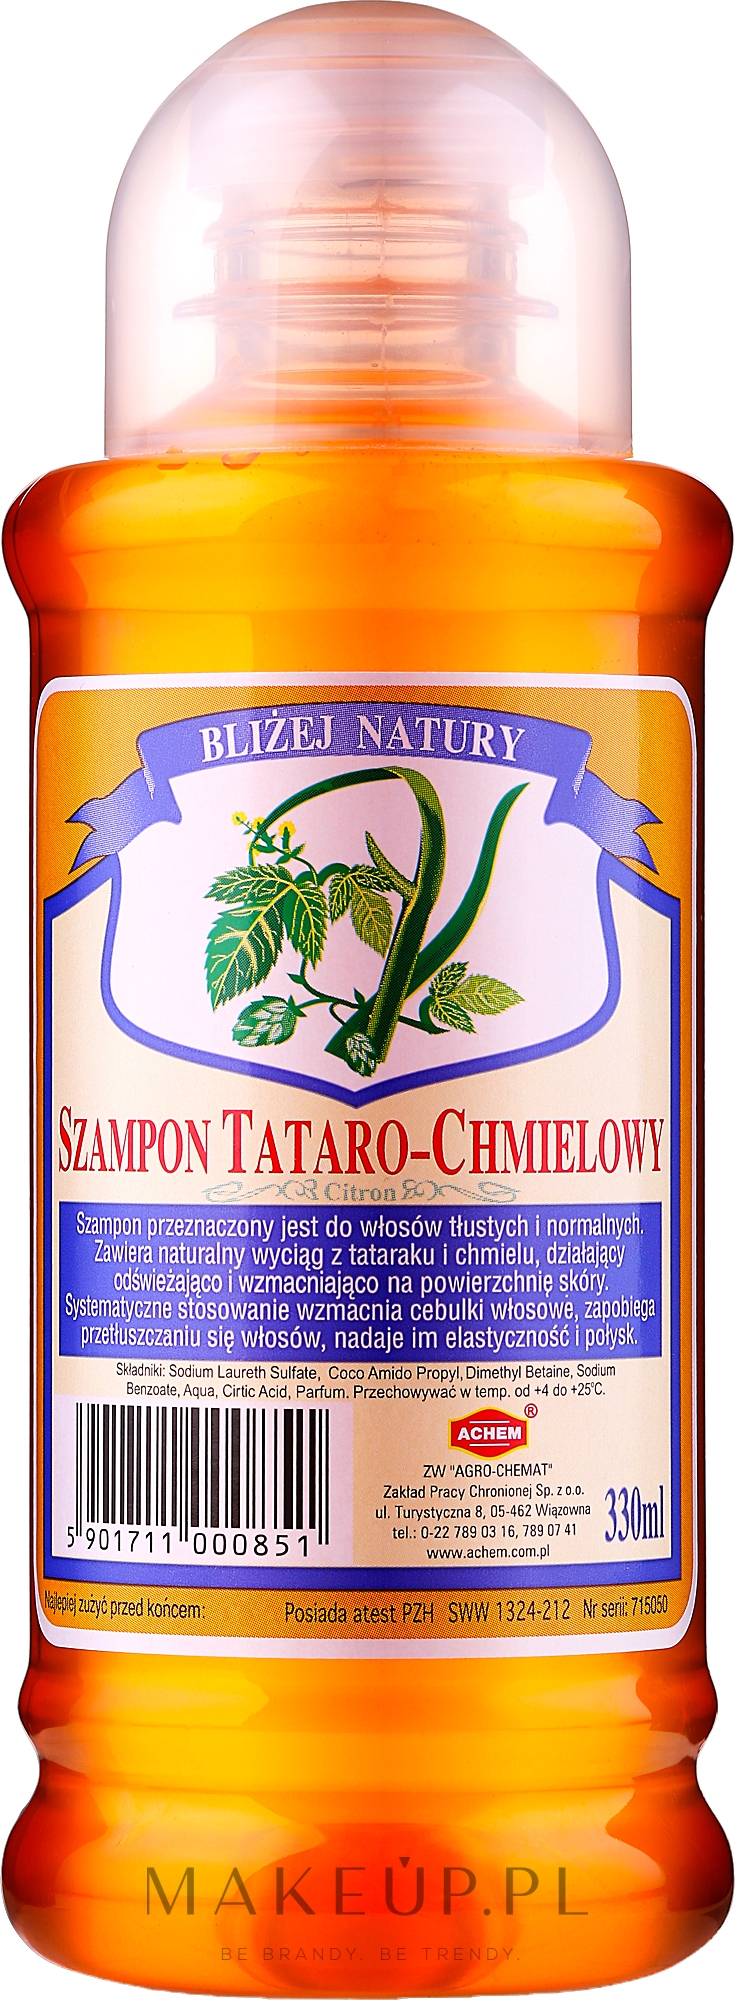 barwa ziołowa szampon do włosów tatarako-chmielowy